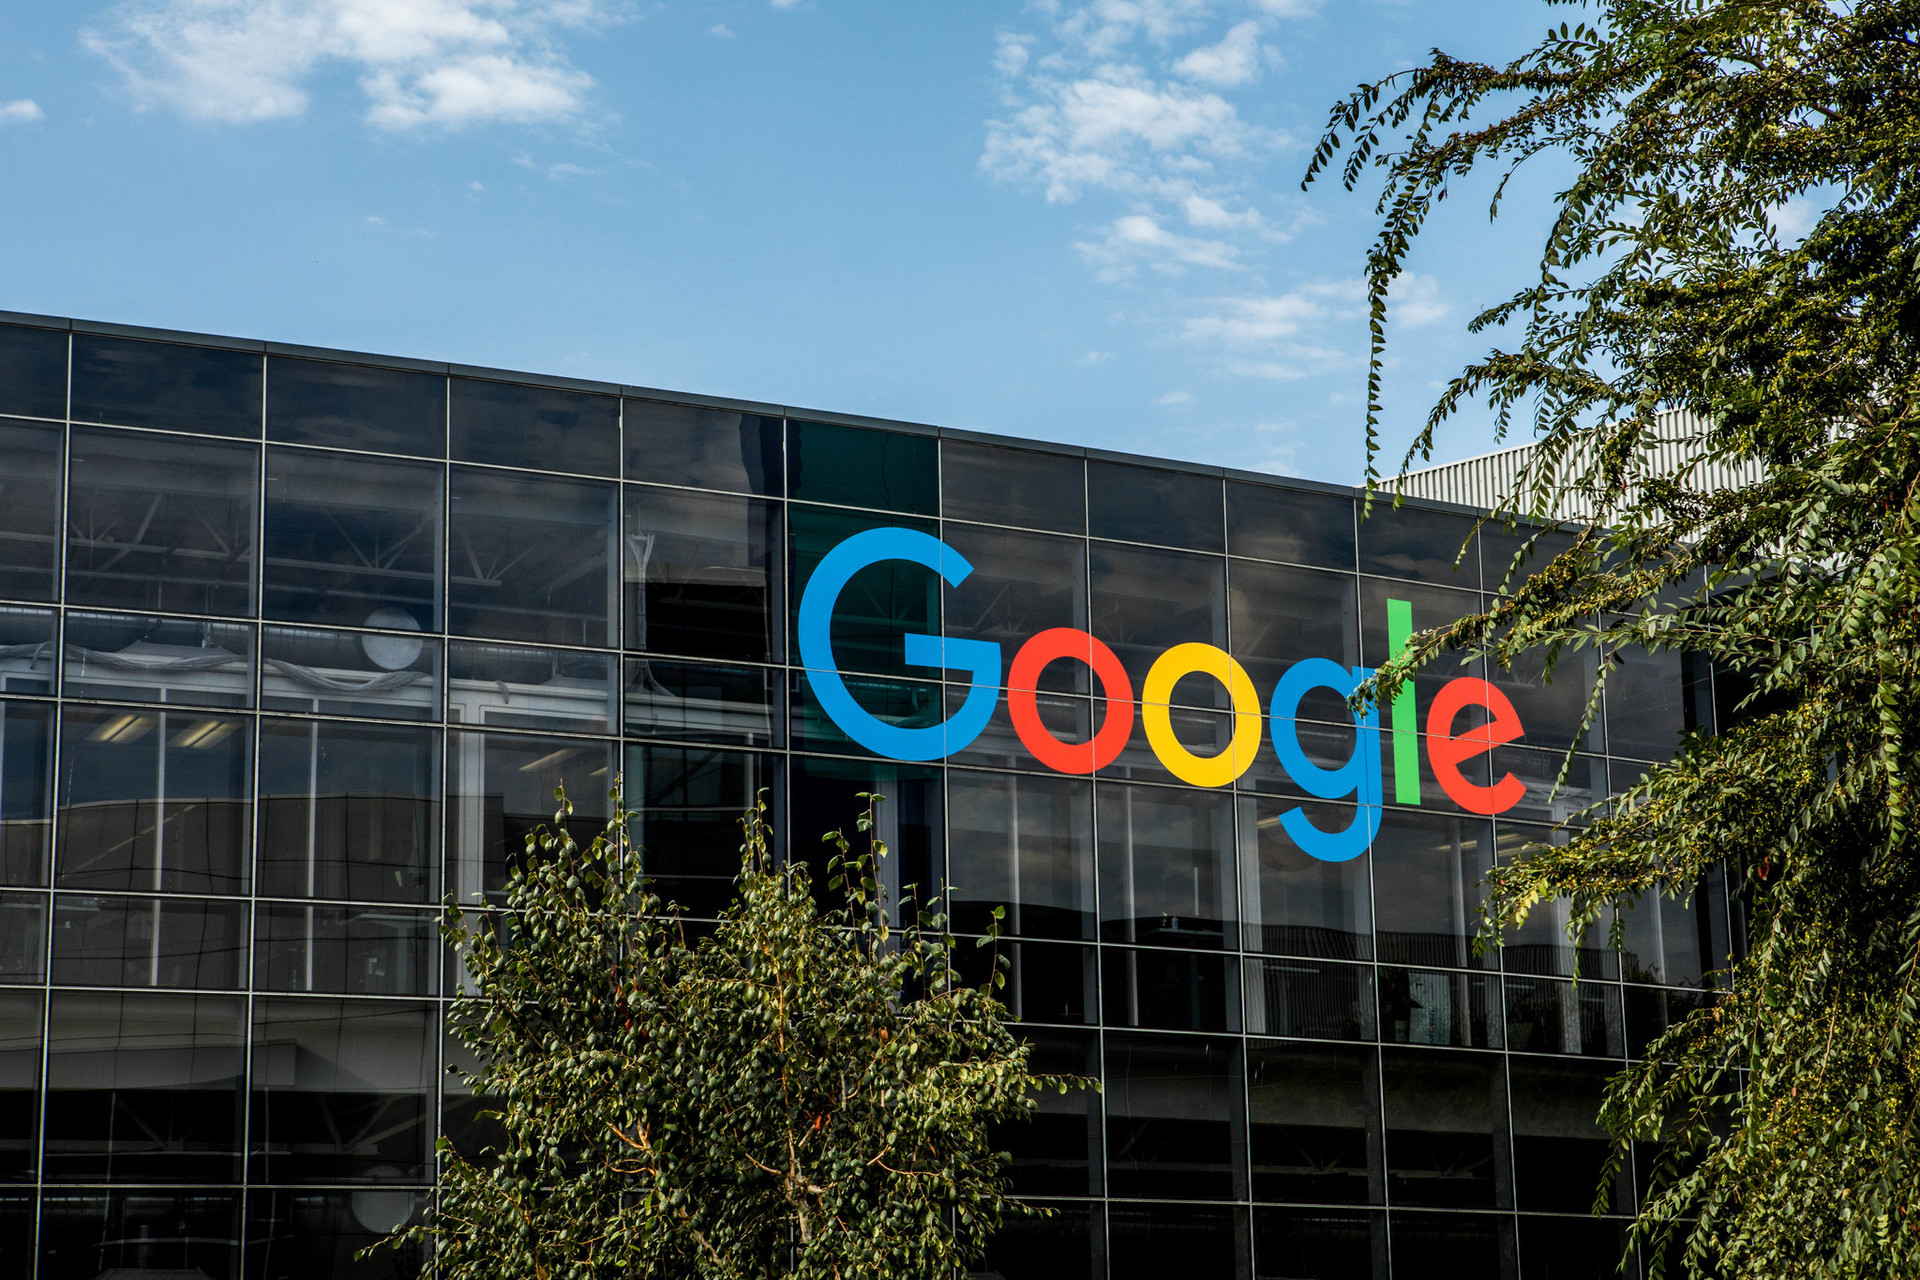 Google có kế hoạch thay đổi theo dõi ứng dụng Android trong một nỗ lực để cải thiện quyền riêng tư của người dùng. Ảnh: NY Times.